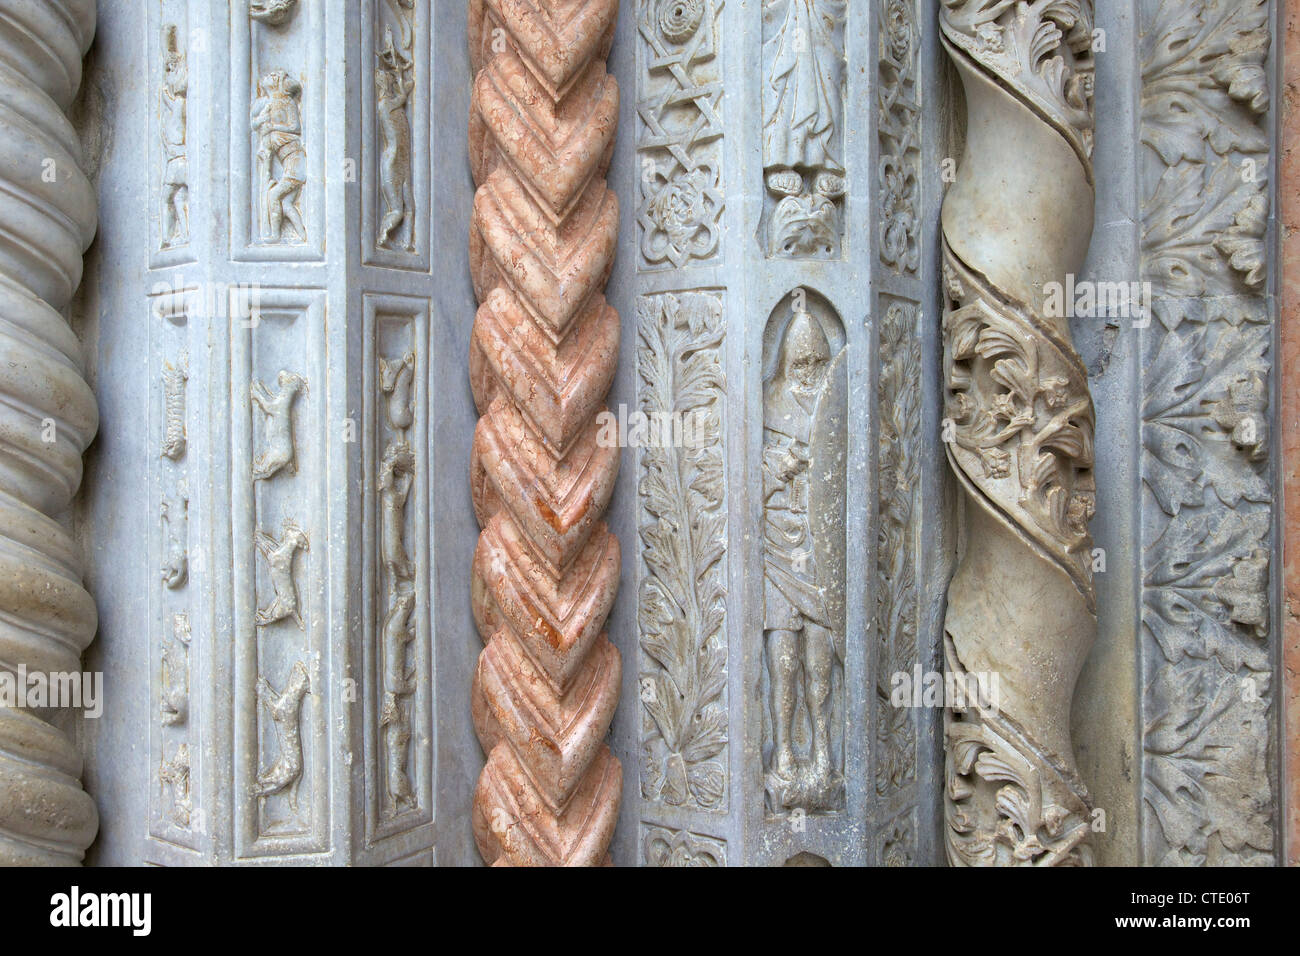 Ornate columns, Giovanni da Campione's porch, Santa Maria Maggiore church, Bergamo, Lombardy, Italy Stock Photo